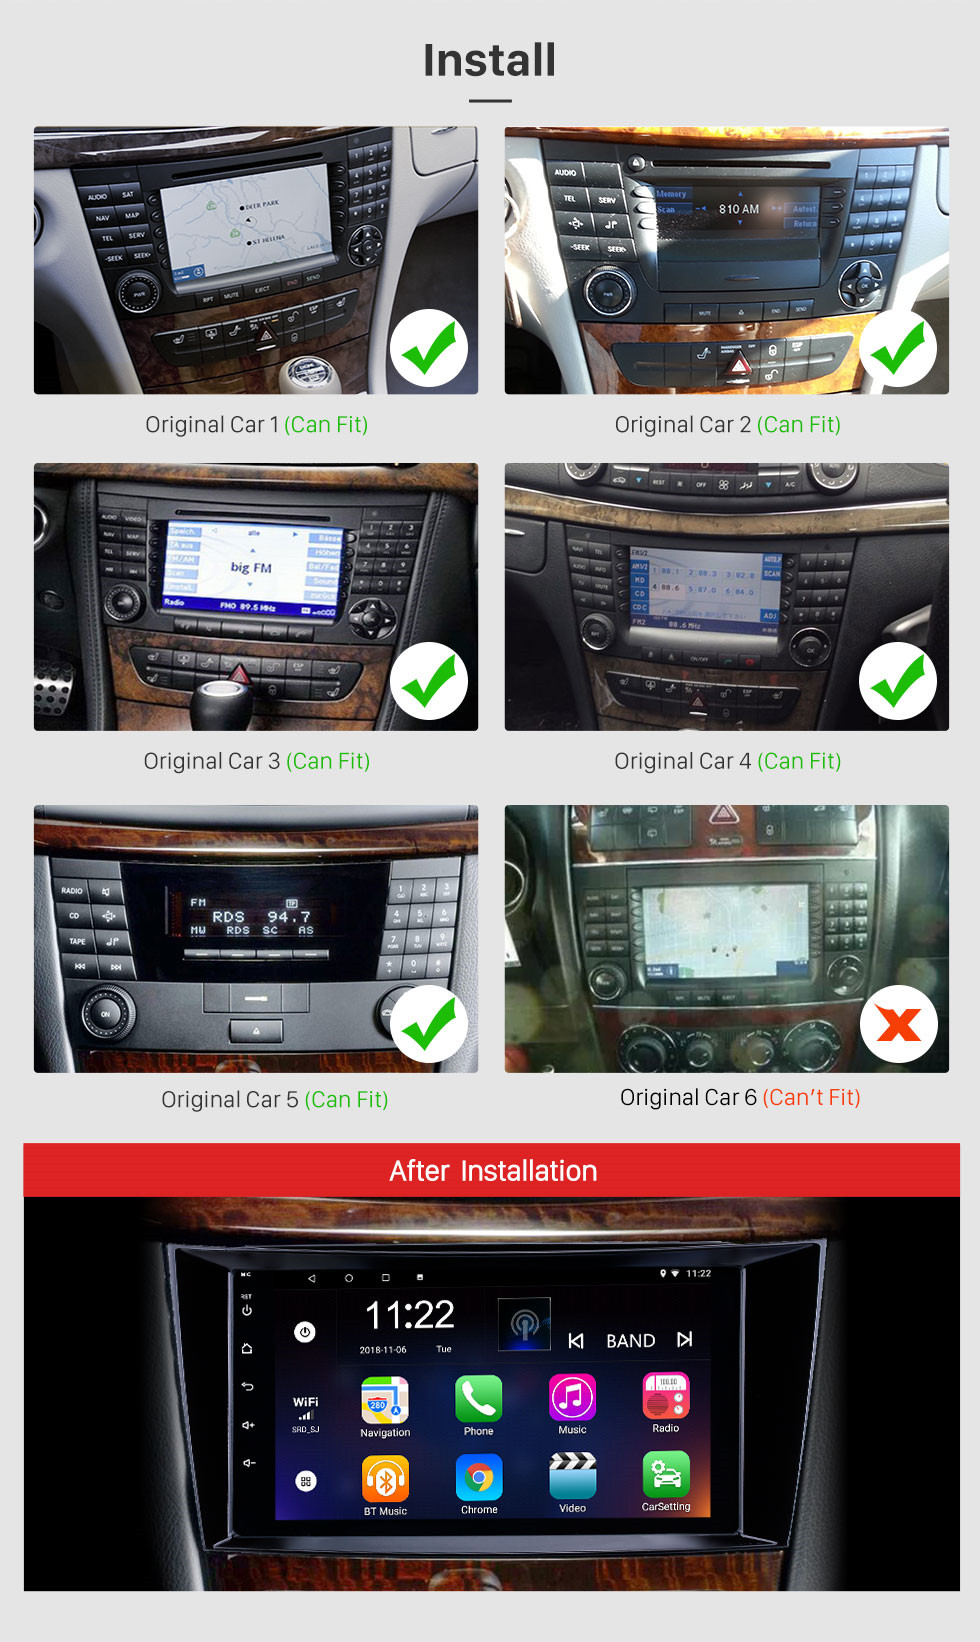 Seicane 8 pulgadas Android 12.0 Radio IPS Pantalla completa Navegación GPS Reproductor multimedia para automóvil para 2005-2006 Mercedes Benz CLK W209 con RDS 3G WiFi Bluetooth Mirror Link OBD2 Control del volante